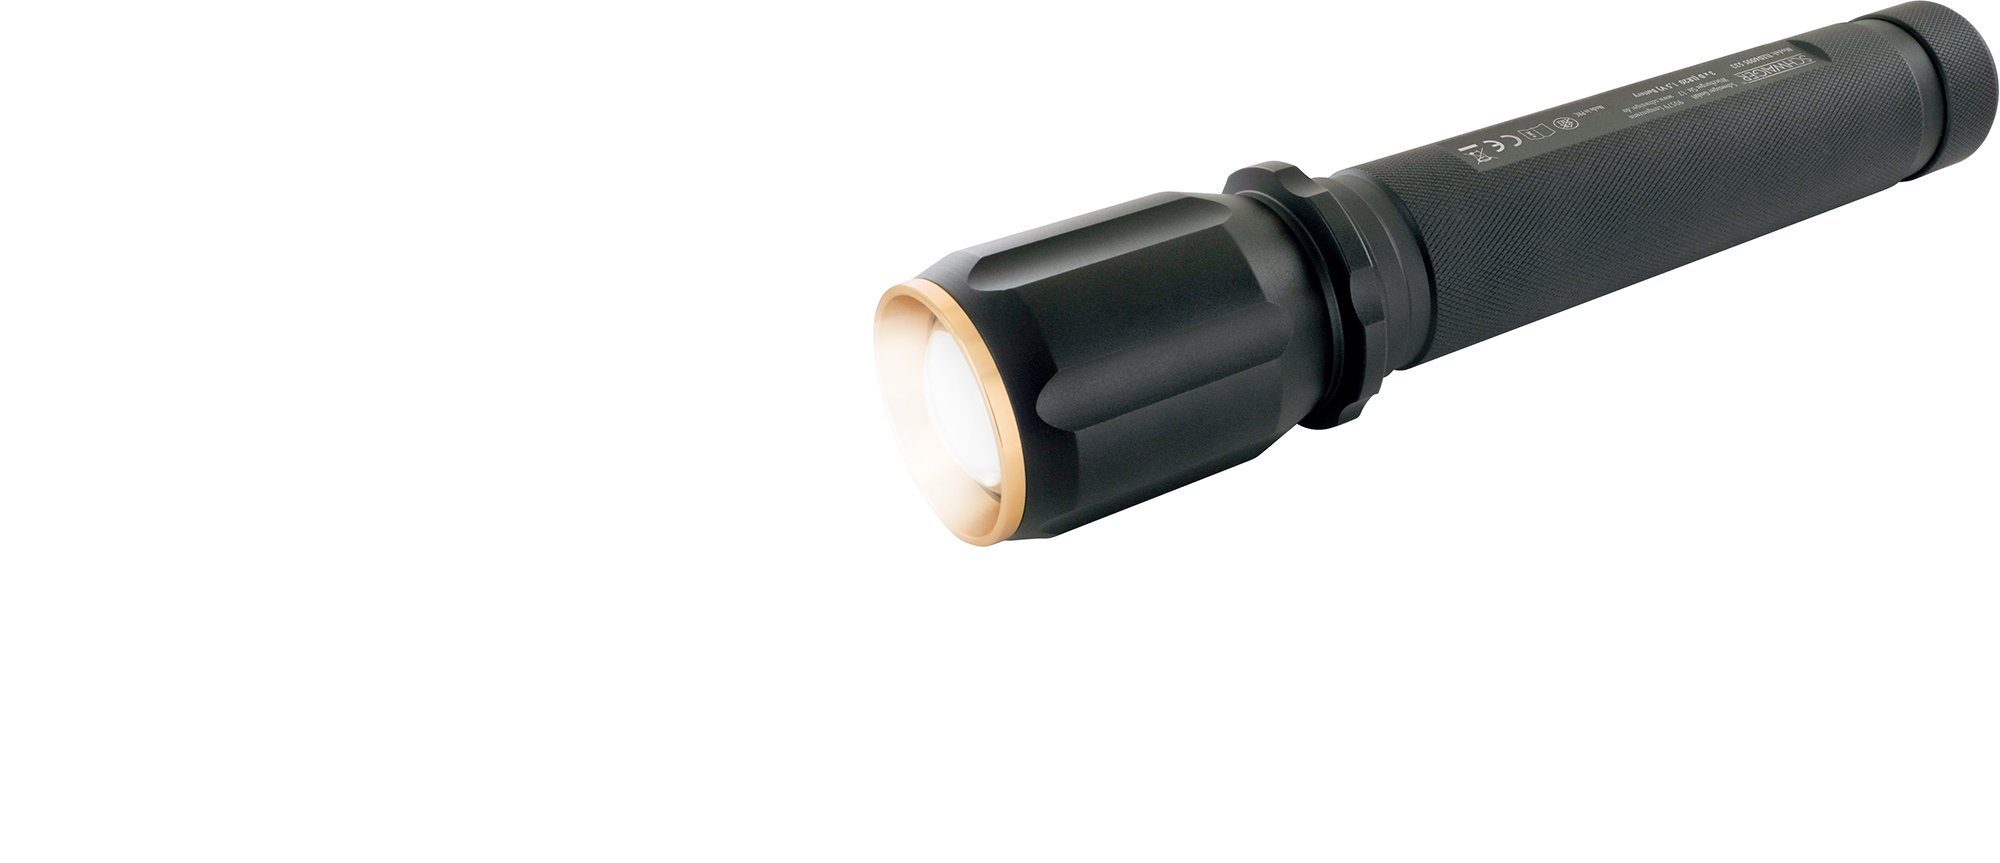 533 spritzwassergeschützt), LED einstellbar Taschenlampe Lichtkegel (Zoomfunktion, 1-St., TLED600S schlagfest, Schwaiger